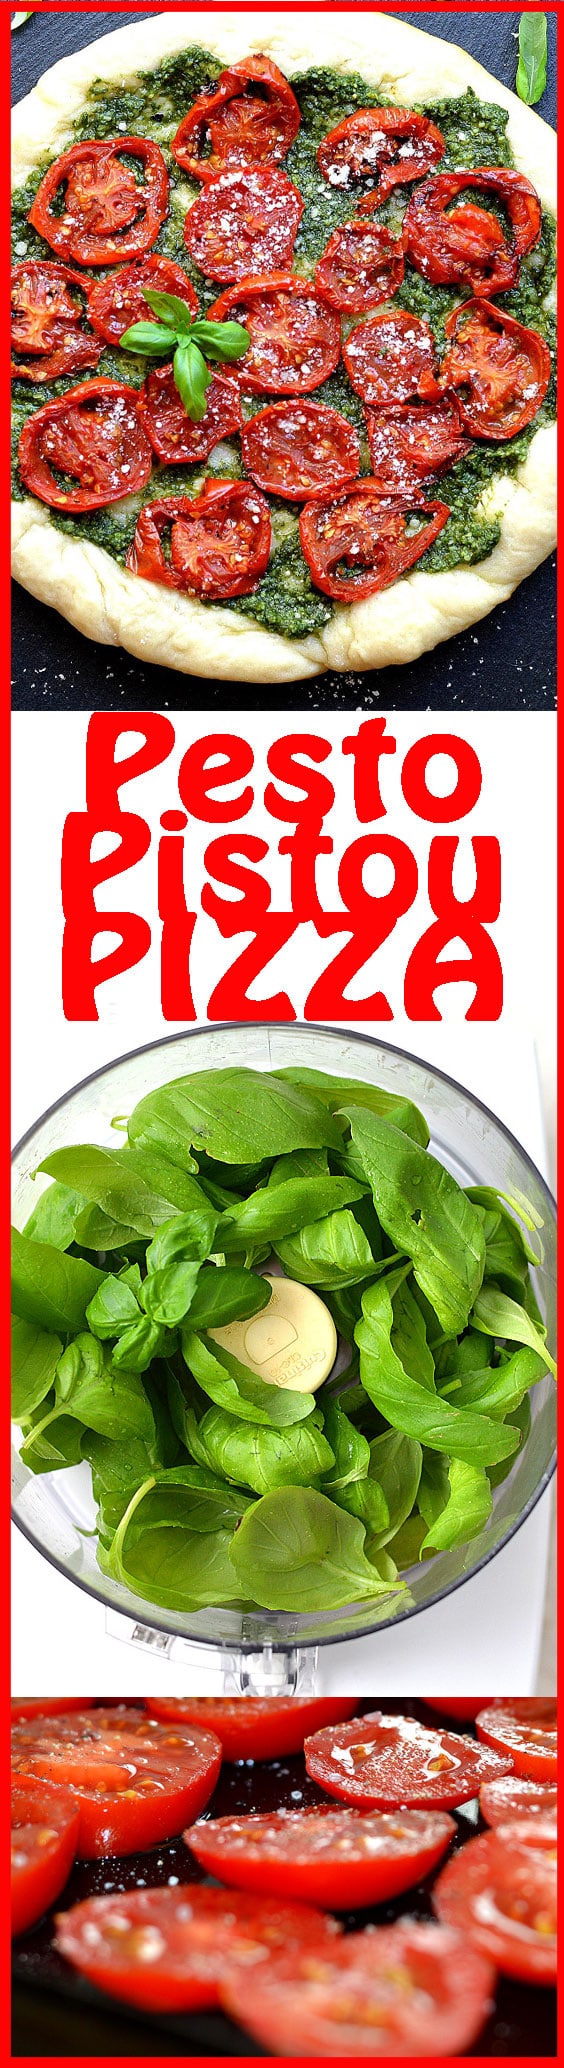 PESTO-PIZZA-PINTEREST